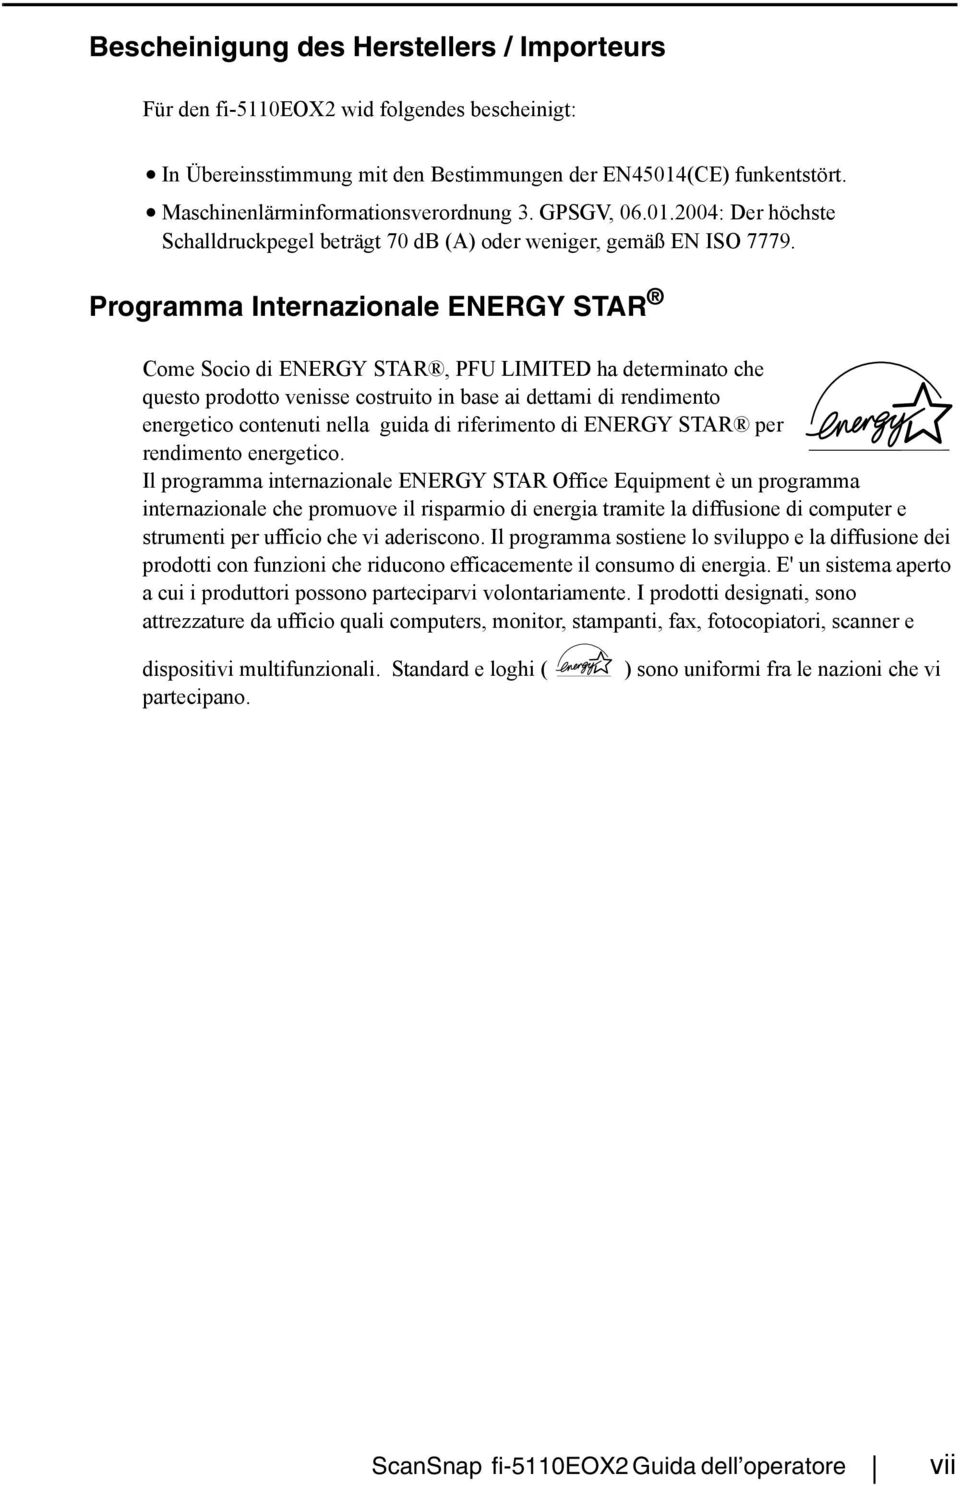 Programma Internazionale ENERGY STAR Come Socio di ENERGY STAR, PFU LIMITED ha determinato che questo prodotto venisse costruito in base ai dettami di rendimento energetico contenuti nella guida di